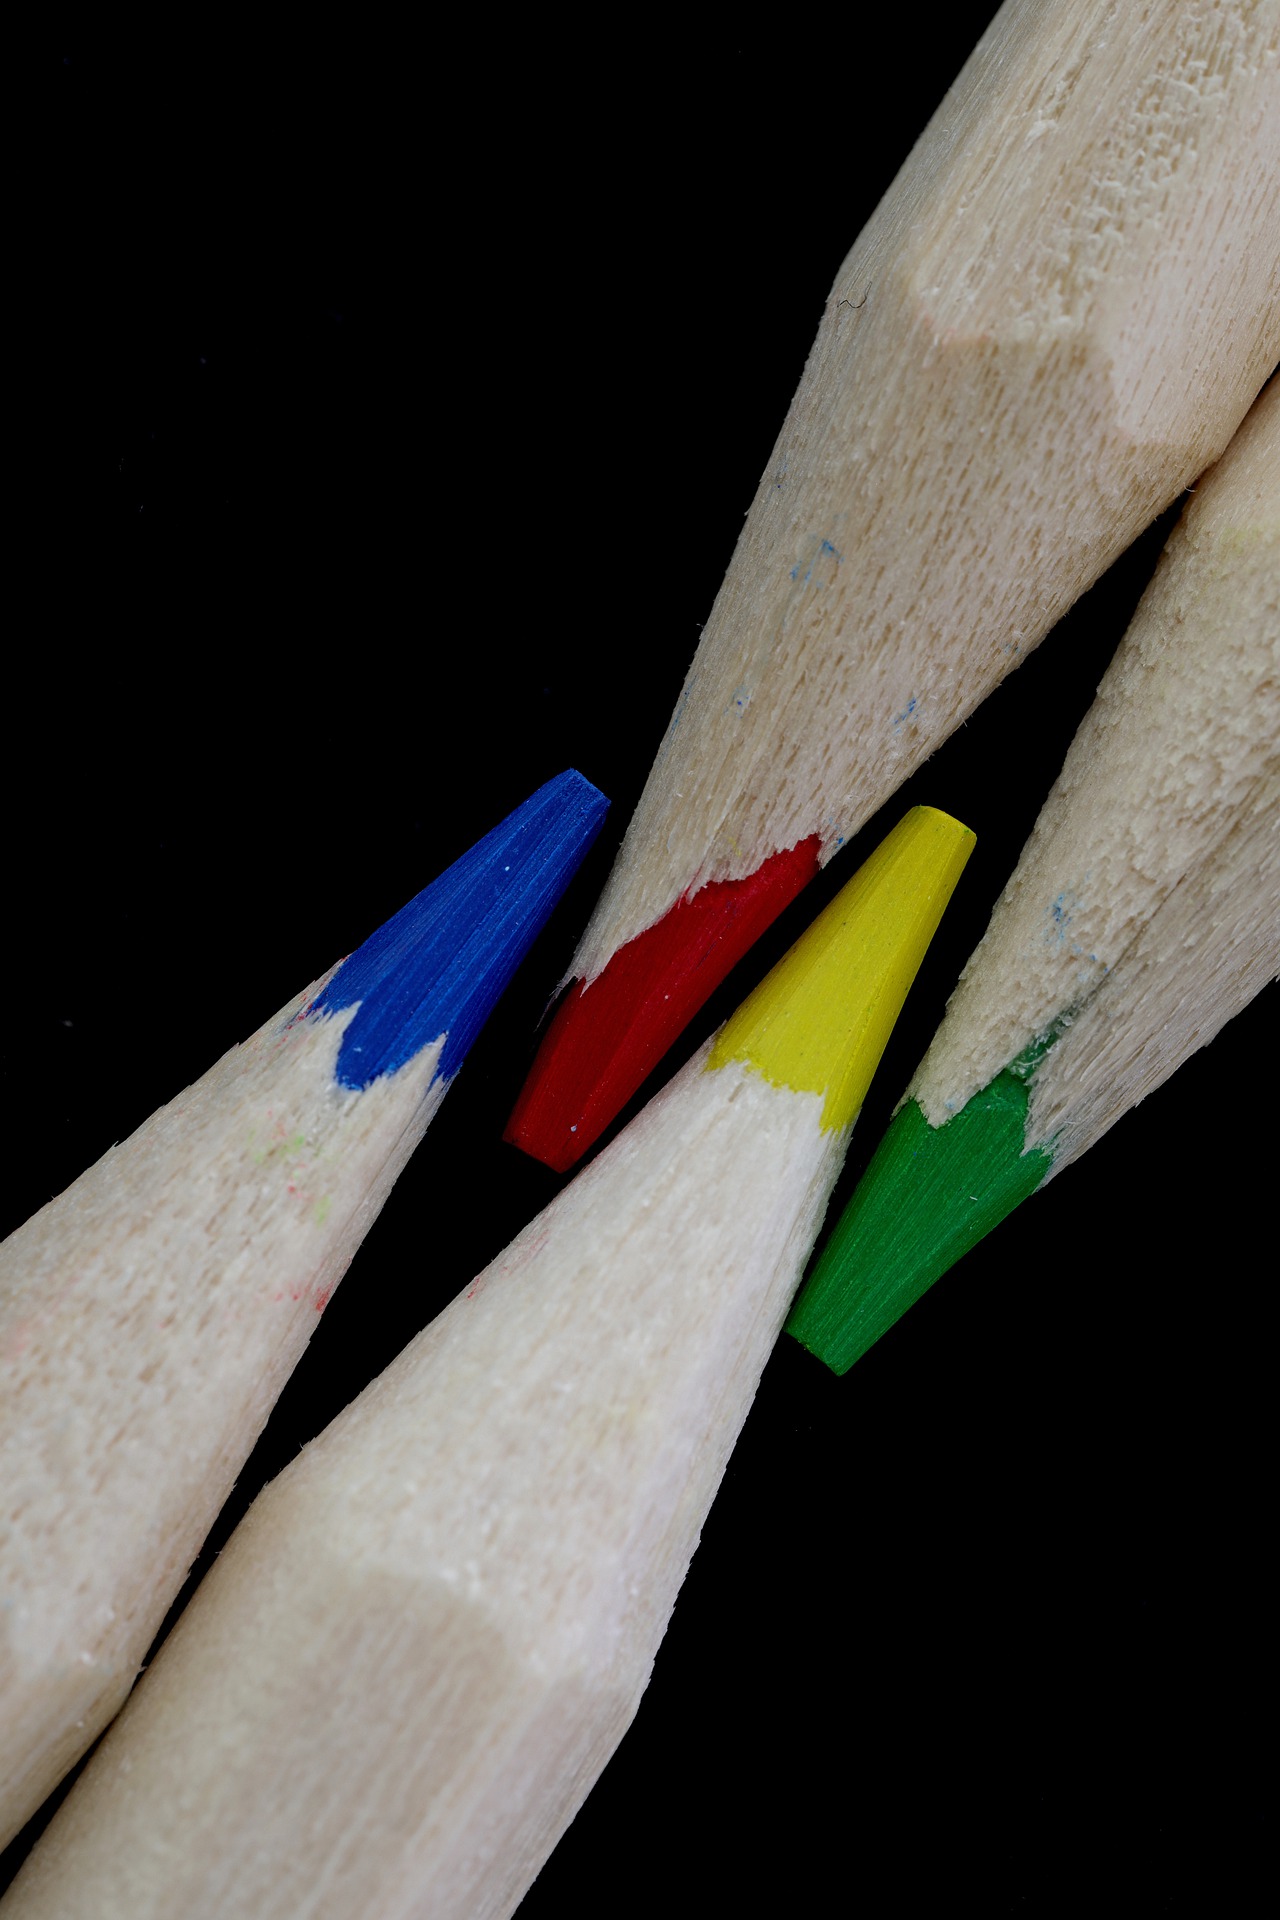 4 Buntstifte in den Farben blau, rot, gelb und blau, die nebeneinander liegen.